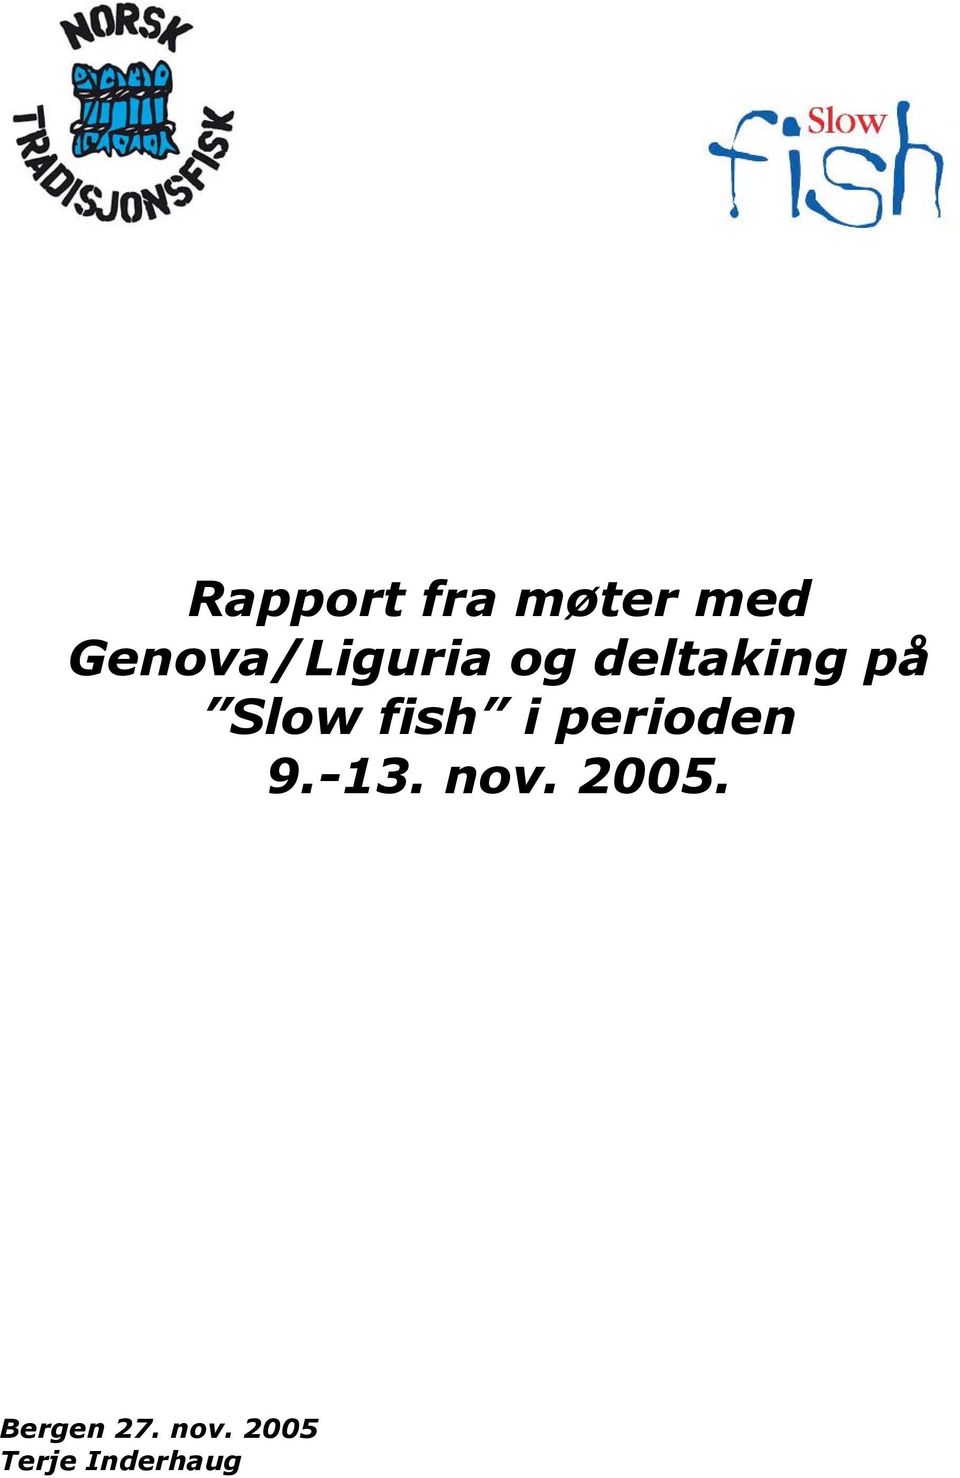 Slow fish i perioden 9.-13. nov.